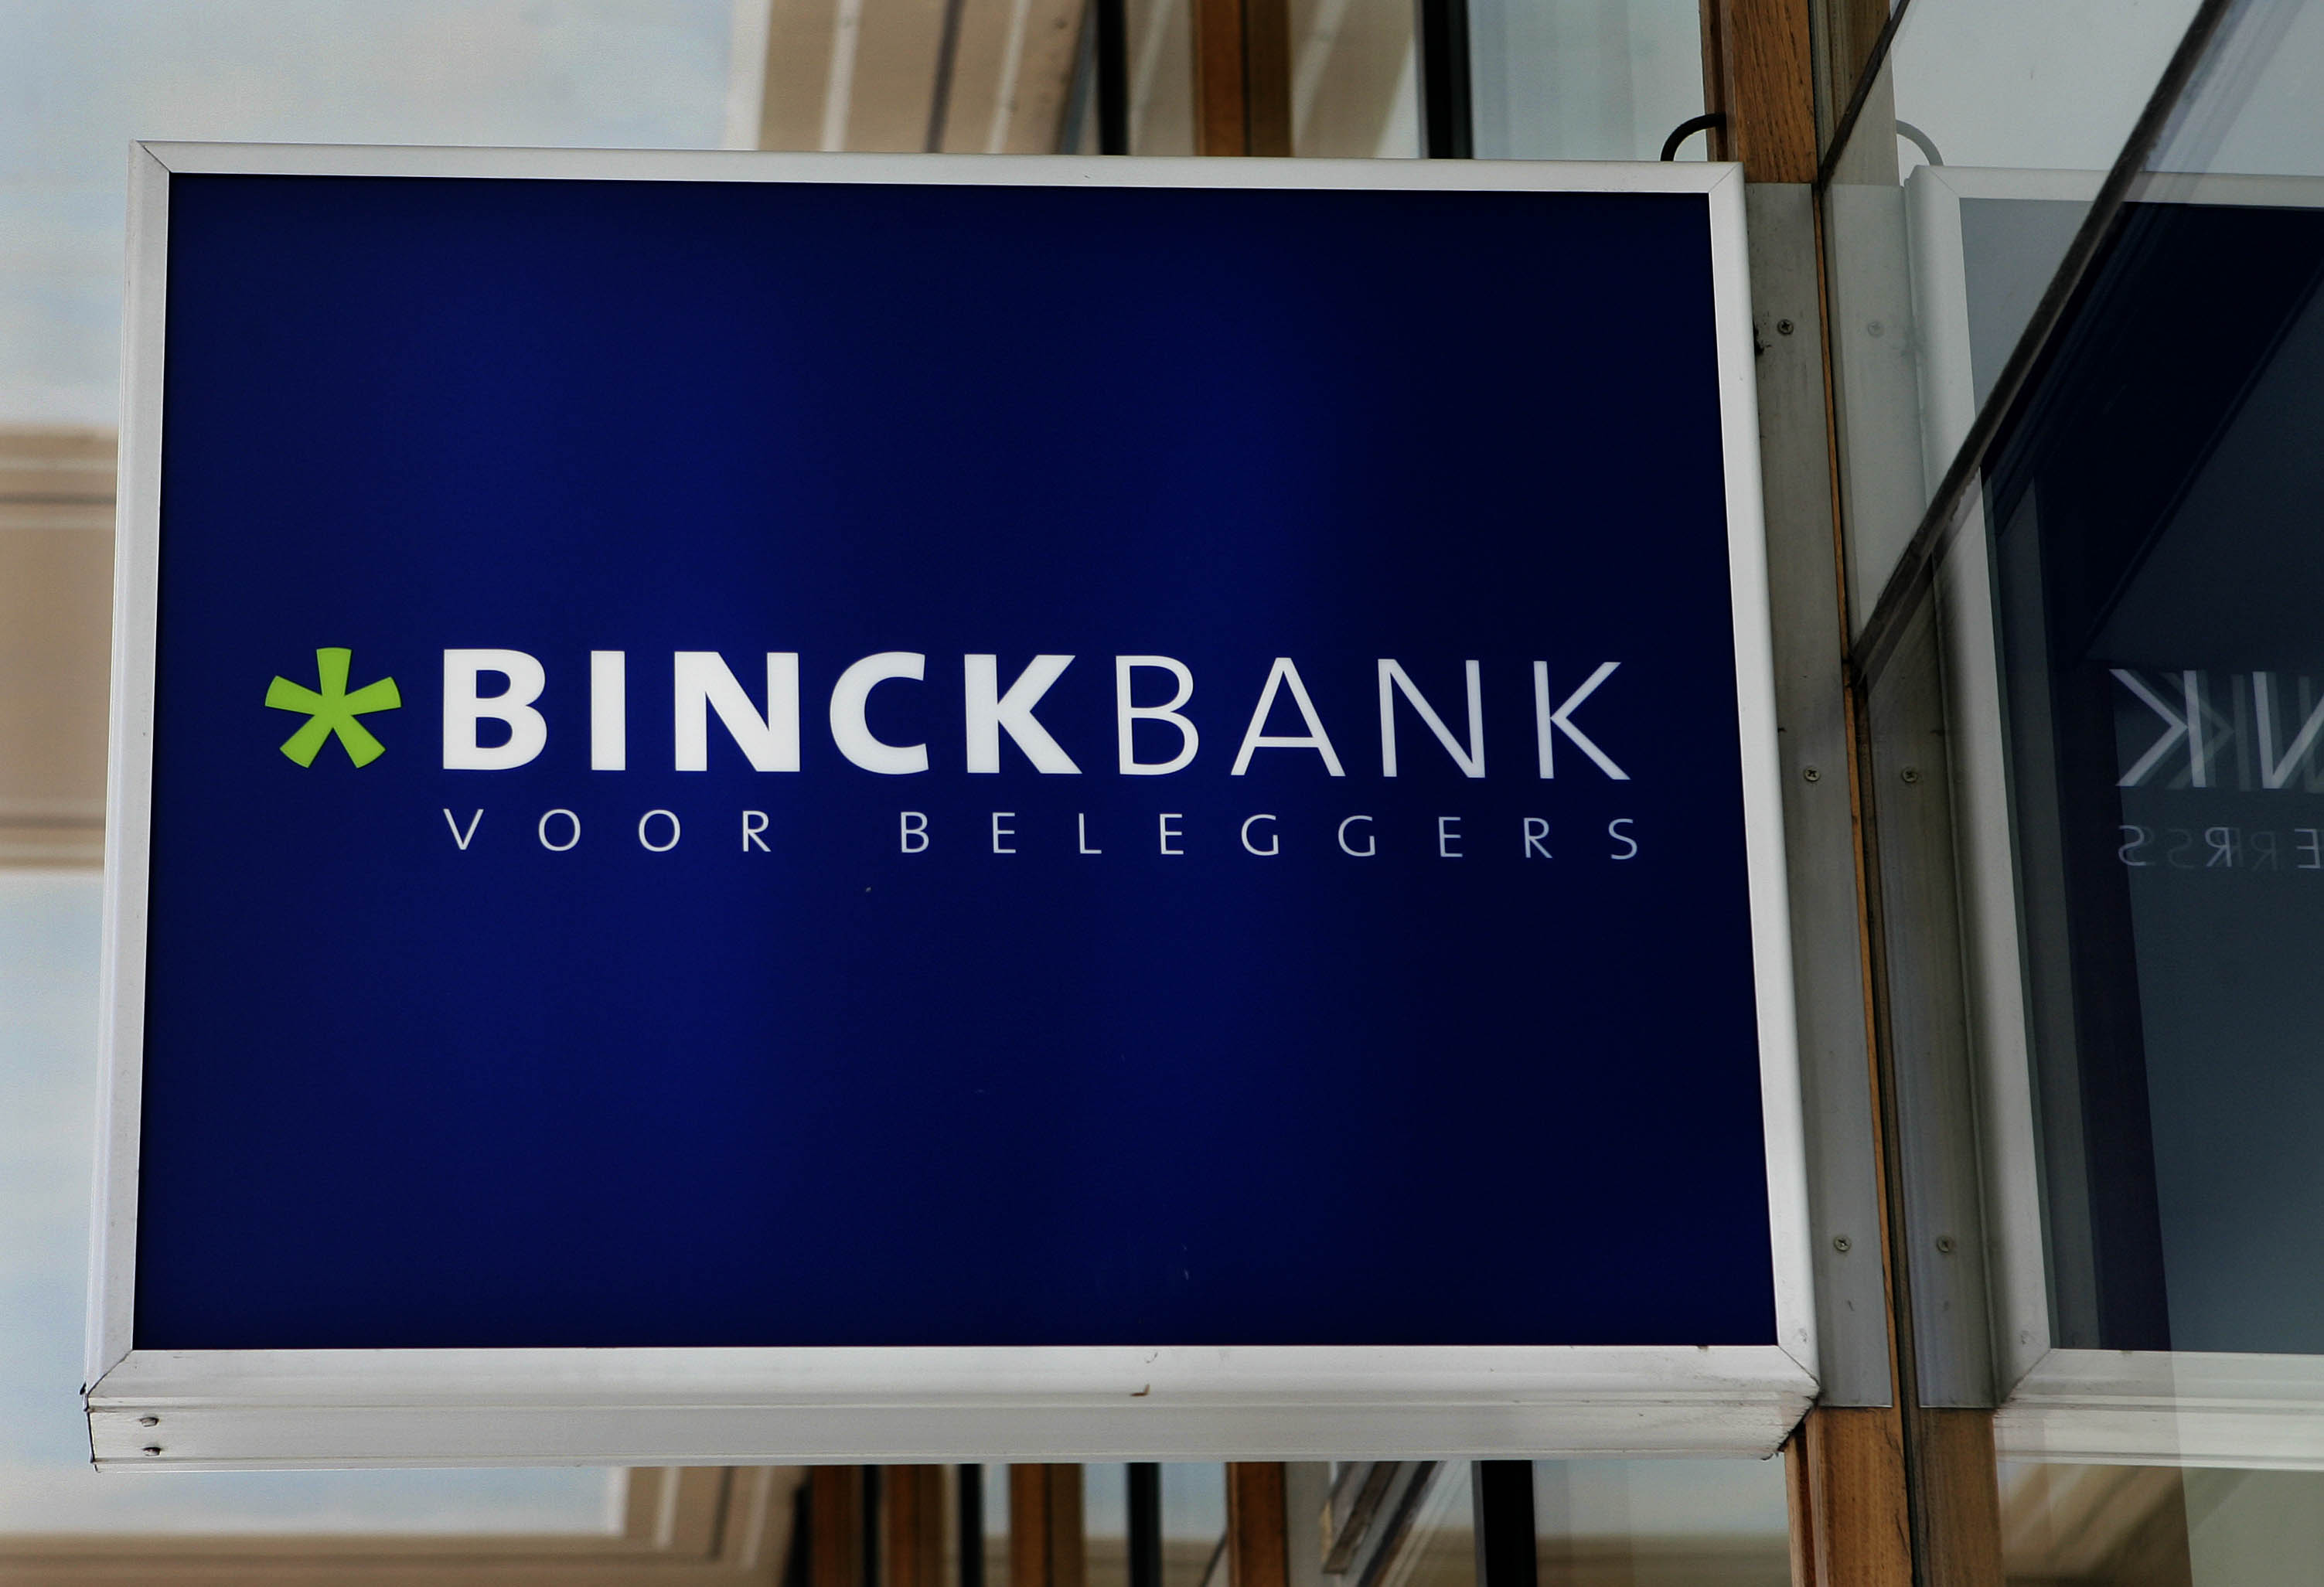 BNP Paribas heeft onlangs een kort geding aangespannen tegen BinckBank vanwege het gebruik door de onlinebroker van de naam Turbo voor beleggingsproducten. De Franse bank claimt het alleenrecht op die benaming, zo bevestigde een woordvoerder van Binck vrijdag naar aanleiding van berichtgeving door De Telegraaf. BNP Paribas kreeg de merknaam Turbo eerder dit jaar in bezit door de overname van activiteiten van Royal Bank of Scotland. De introductie door BinckBank van eigen turbo's, beleggingsproducten waarbij met een hefboom kan worden ingespeeld op koersstijgingen en -dalingen van onderliggende waarden, schoot BNP daarom in het verkeerde keelgat. Binck vindt echter dat de naam turbo is ingeburgerd, waardoor inmiddels sprake is van een soortnaam. De rechter doet volgens de woordvoerder dinsdag uitspraak in het kort geding.